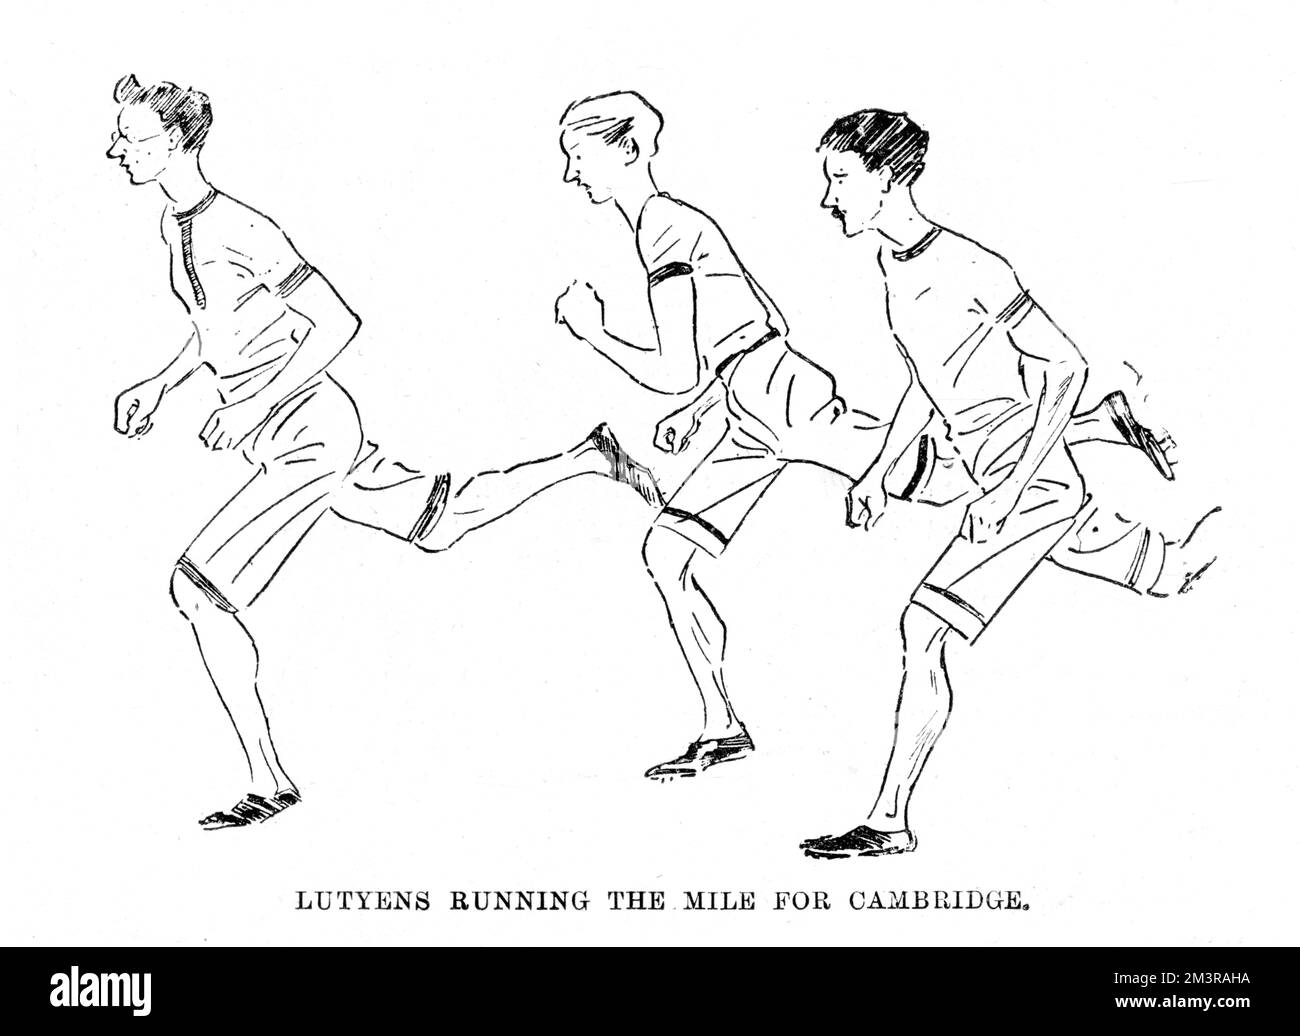 Croquis des coureurs à l'événement sportif de la varthité en 1893 représentant Lutyens courir le mile pour l'université de Cambridge. Date: 1893 Banque D'Images